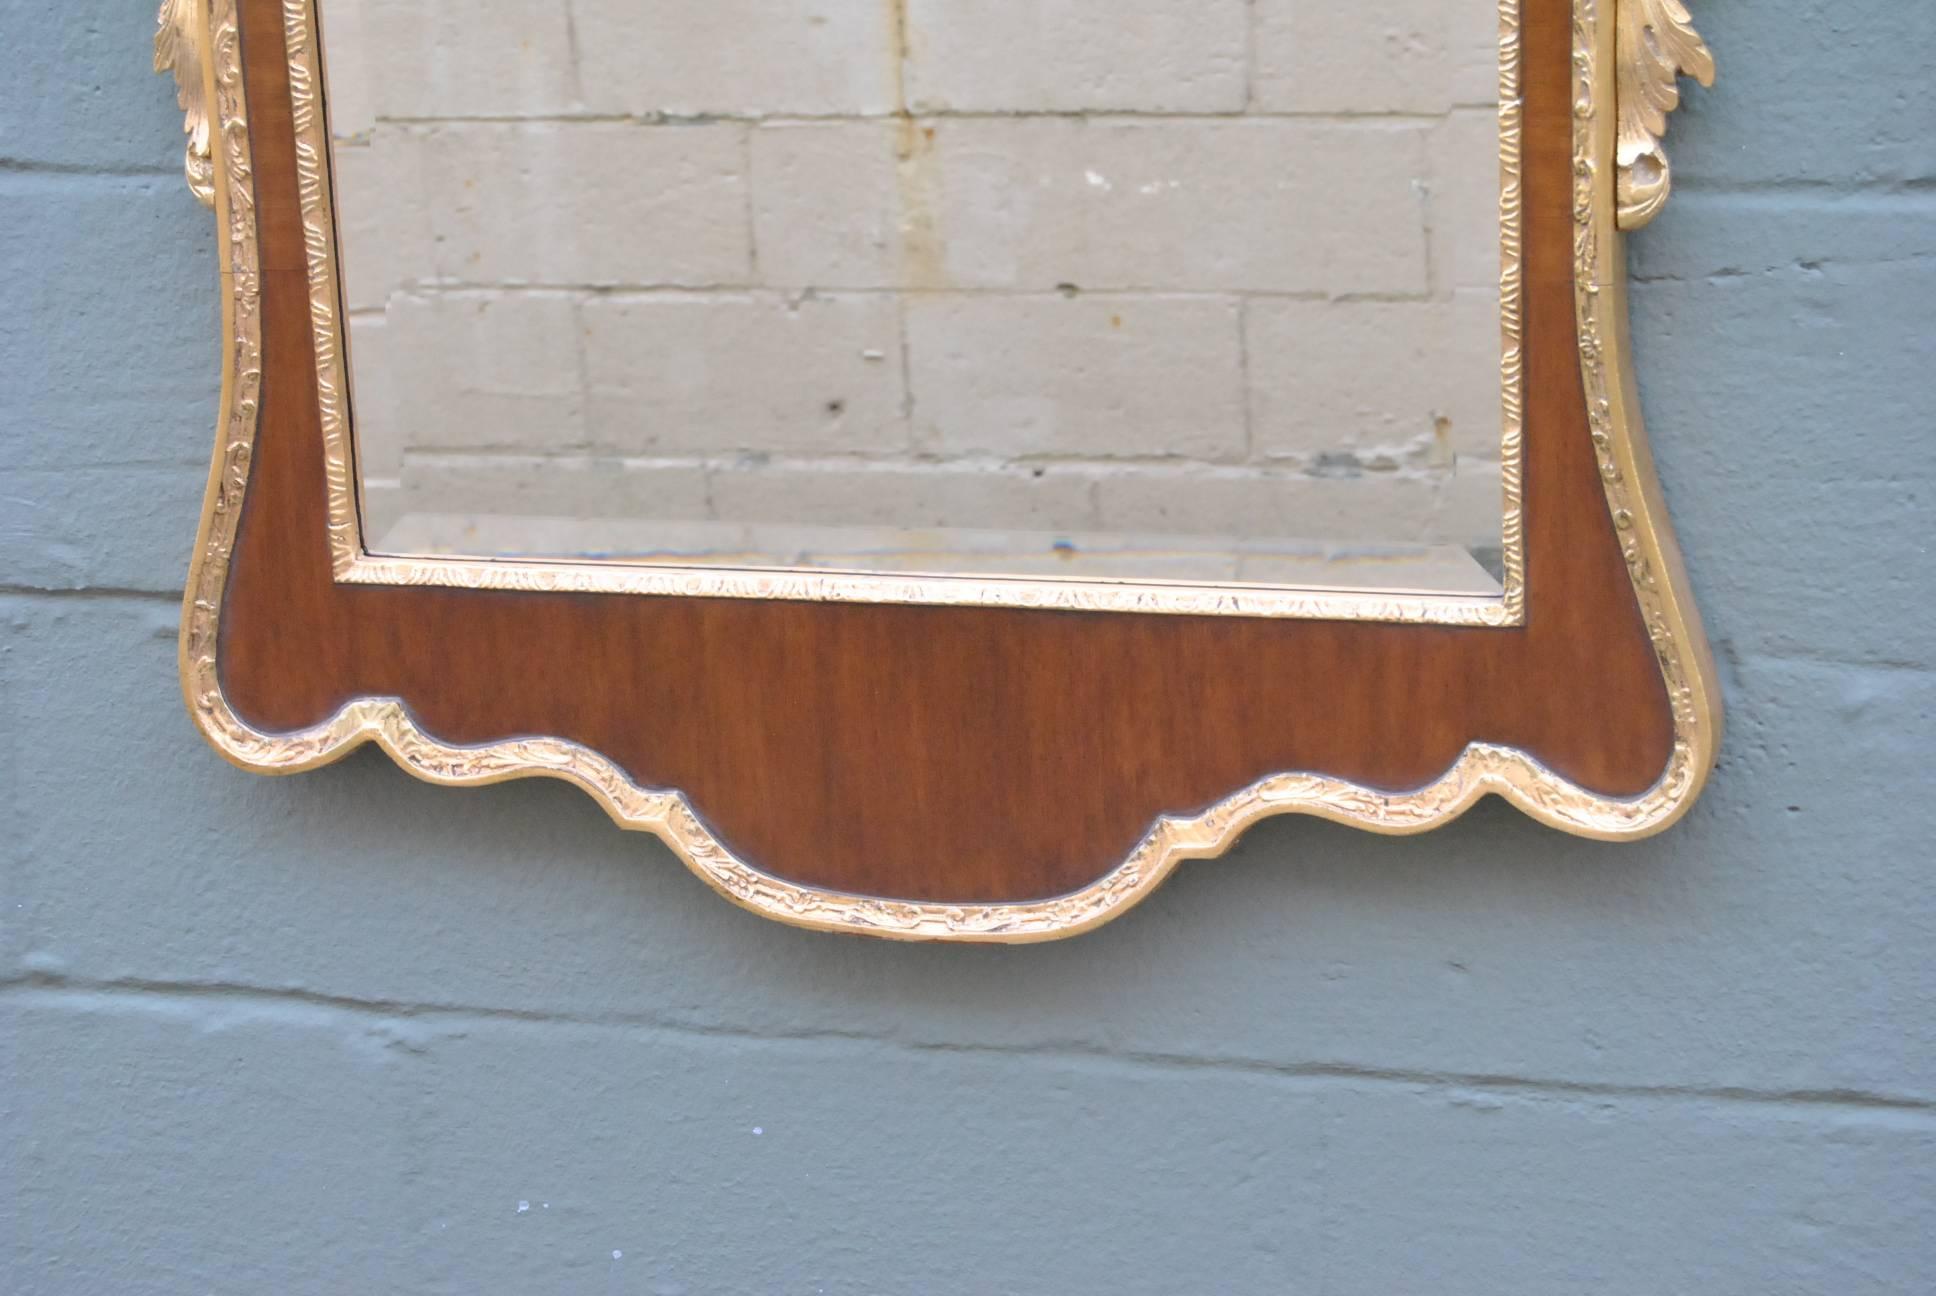 Friedman Brothers Mahagoni und Gold Colonial Williamsburg Gouverneure Palast Spiegel Modell CW-LG15 georgianischen Stil Spiegel, ca. 1980er Jahre. Schöne vergoldete geschnitzte Details und abgeschrägtes Glas. Kopie eines Entwurfs aus dem 18.